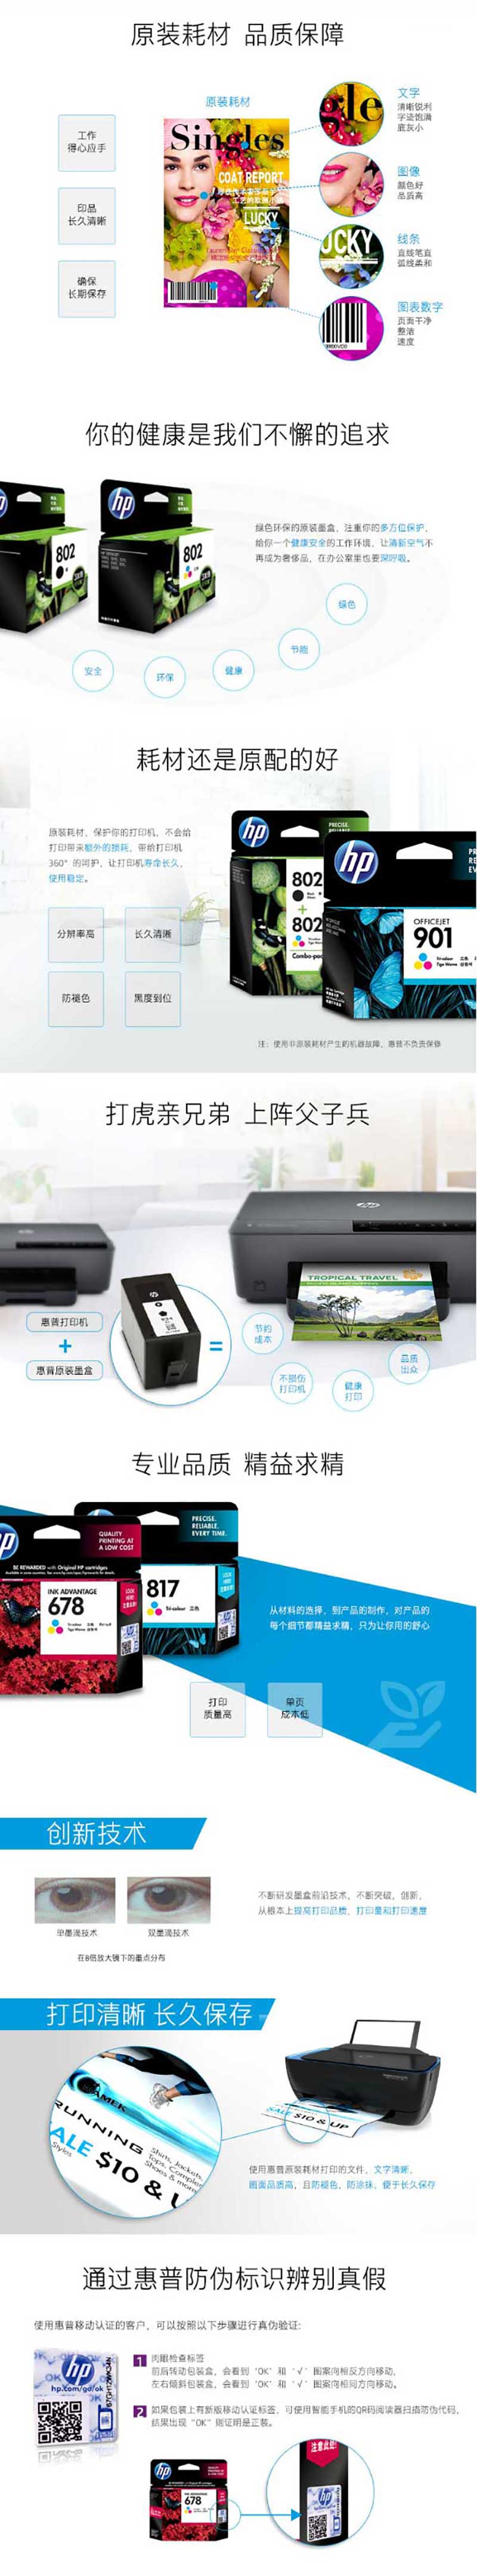 惠普 CH562ZZ 802 彩色墨盒 低容装（适用Deskjet1050 2050 1000 2000 1010 1510）